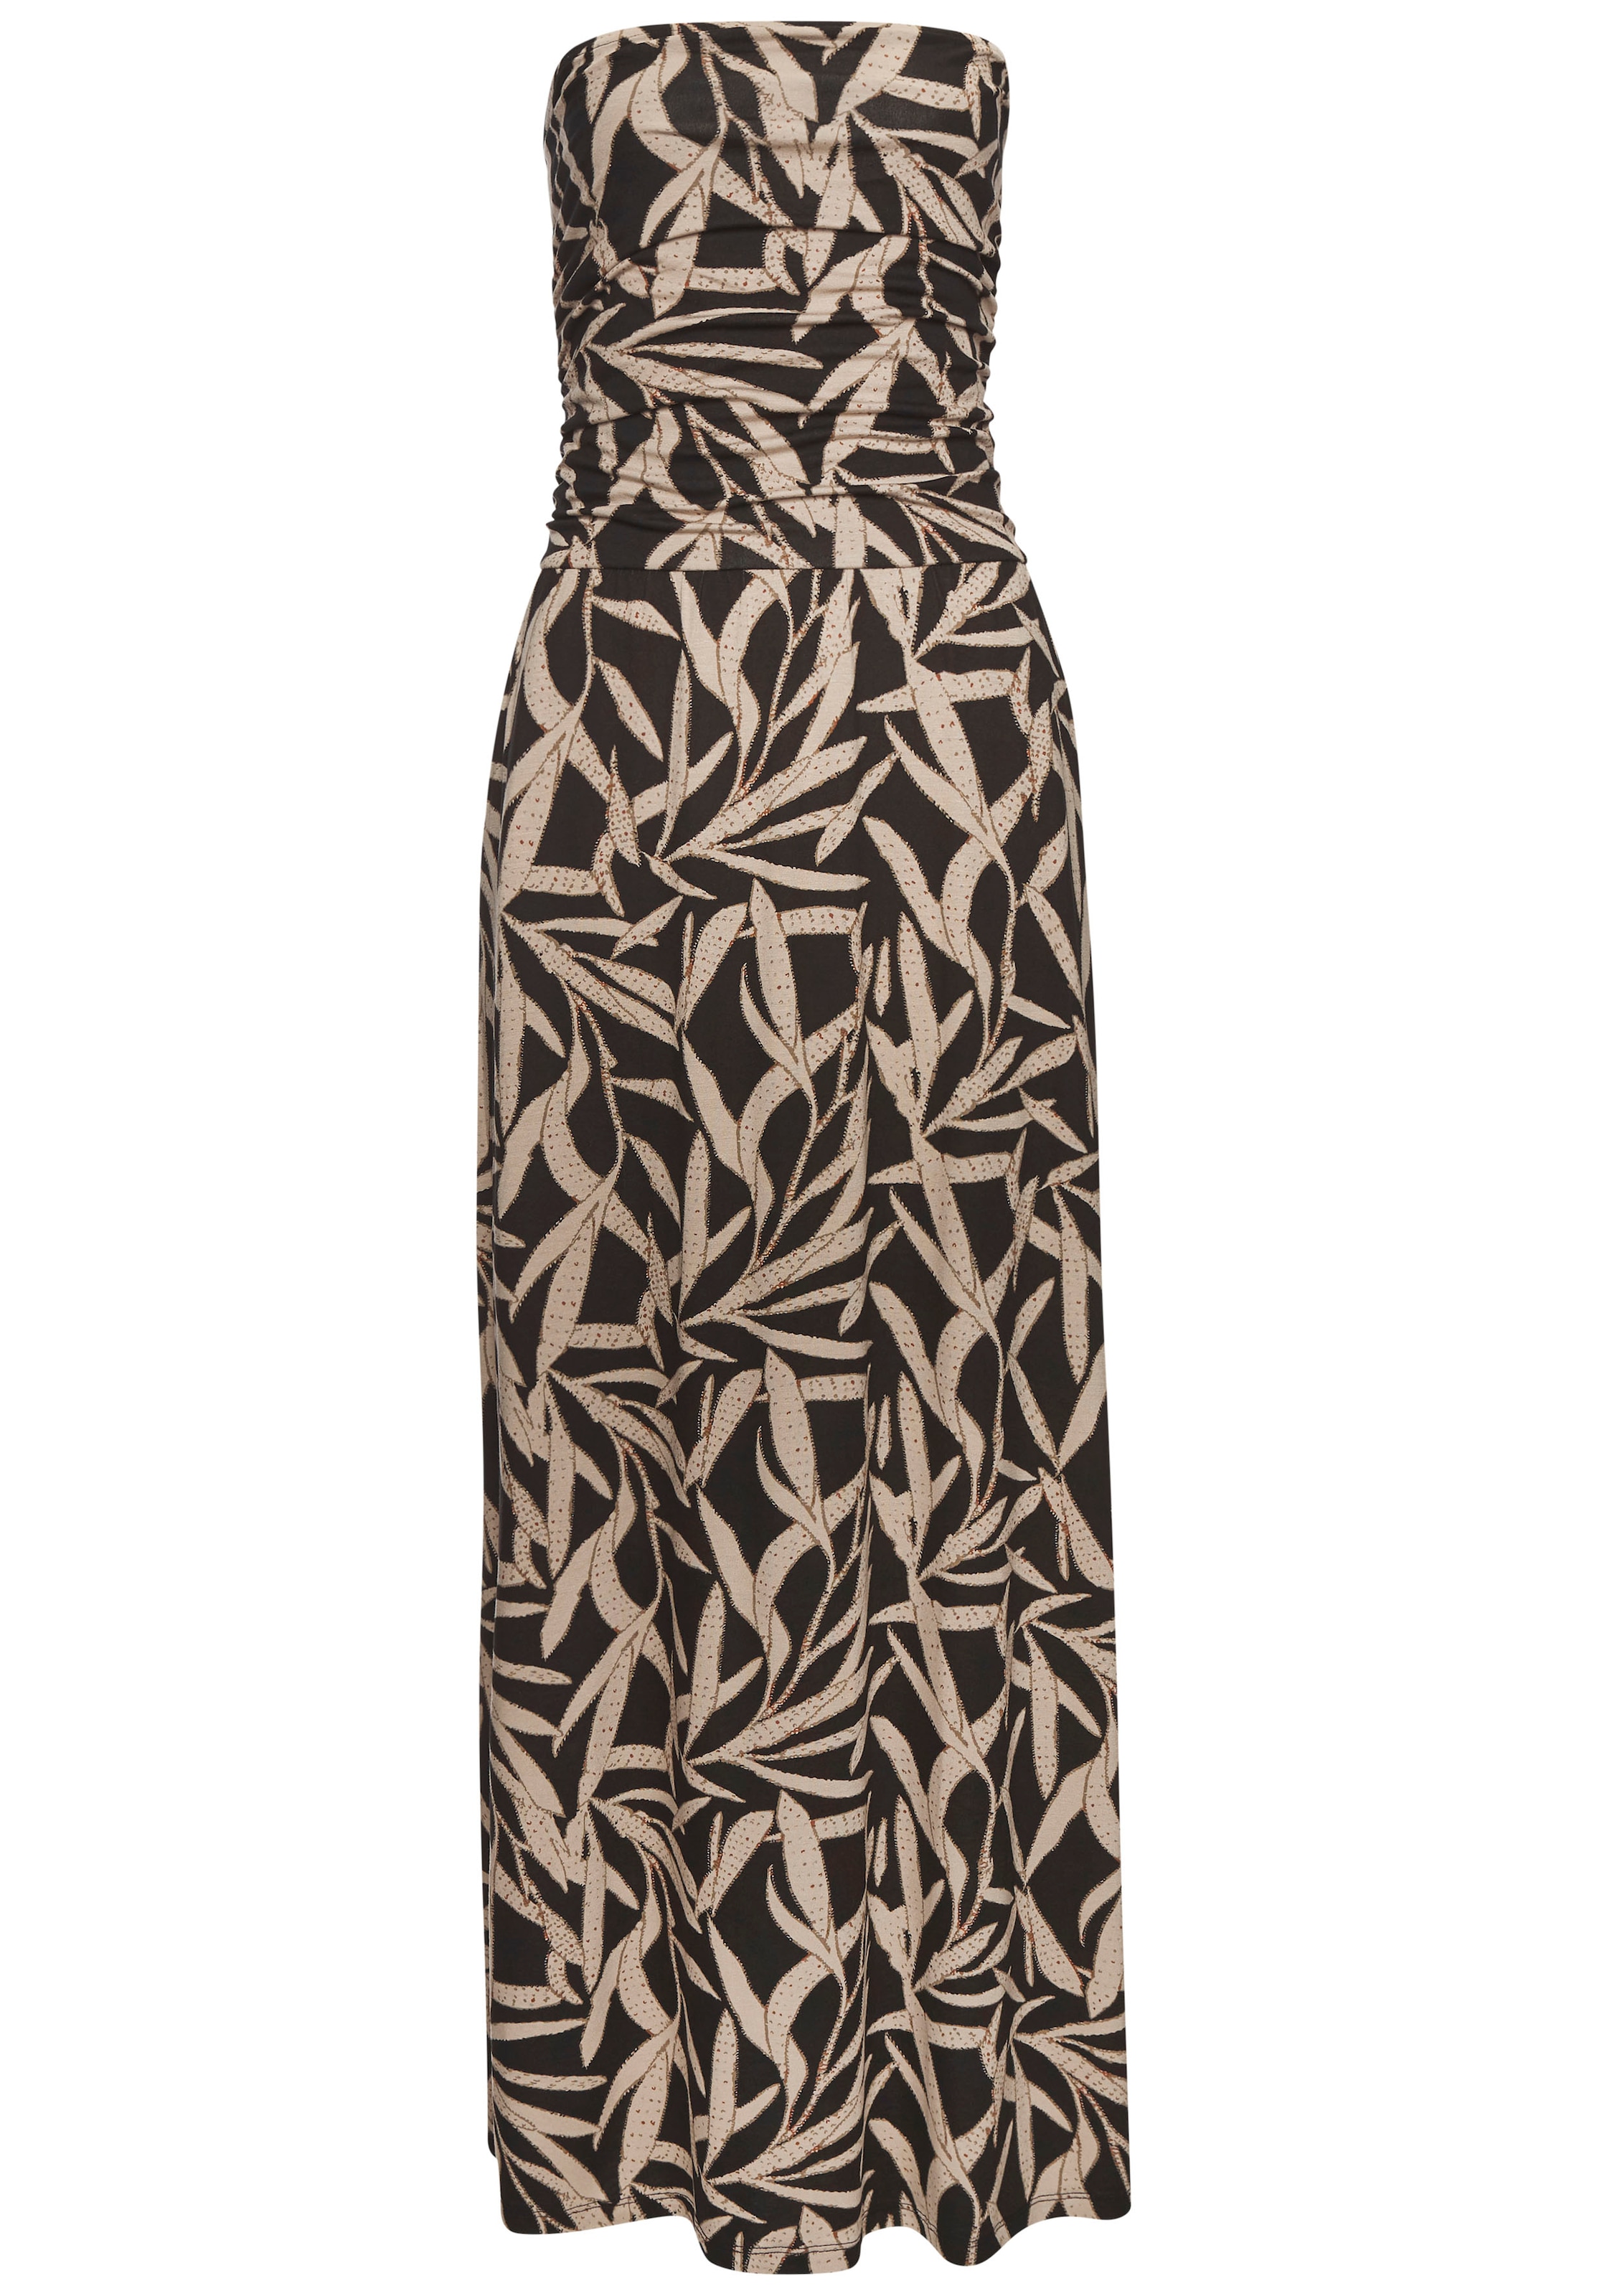 s.Oliver Maxikleid, mit Blätterdruck, luftiges Sommerkleid mit Taschen, Strandkleid